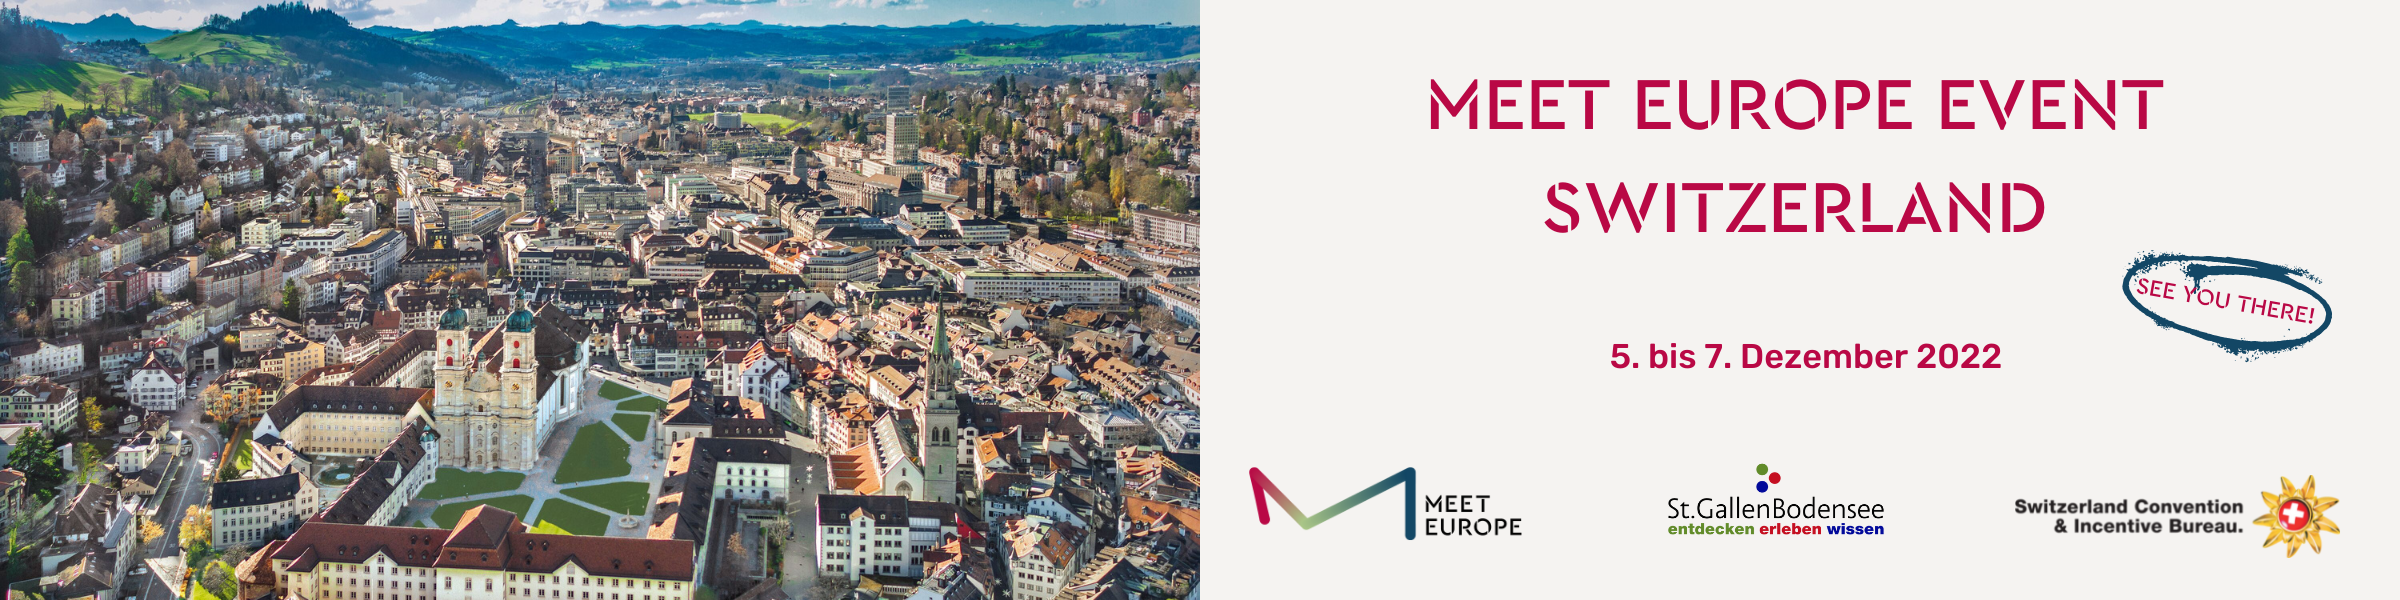 Header-Bild für MEET EUROPE EVENT Switzerland 2022